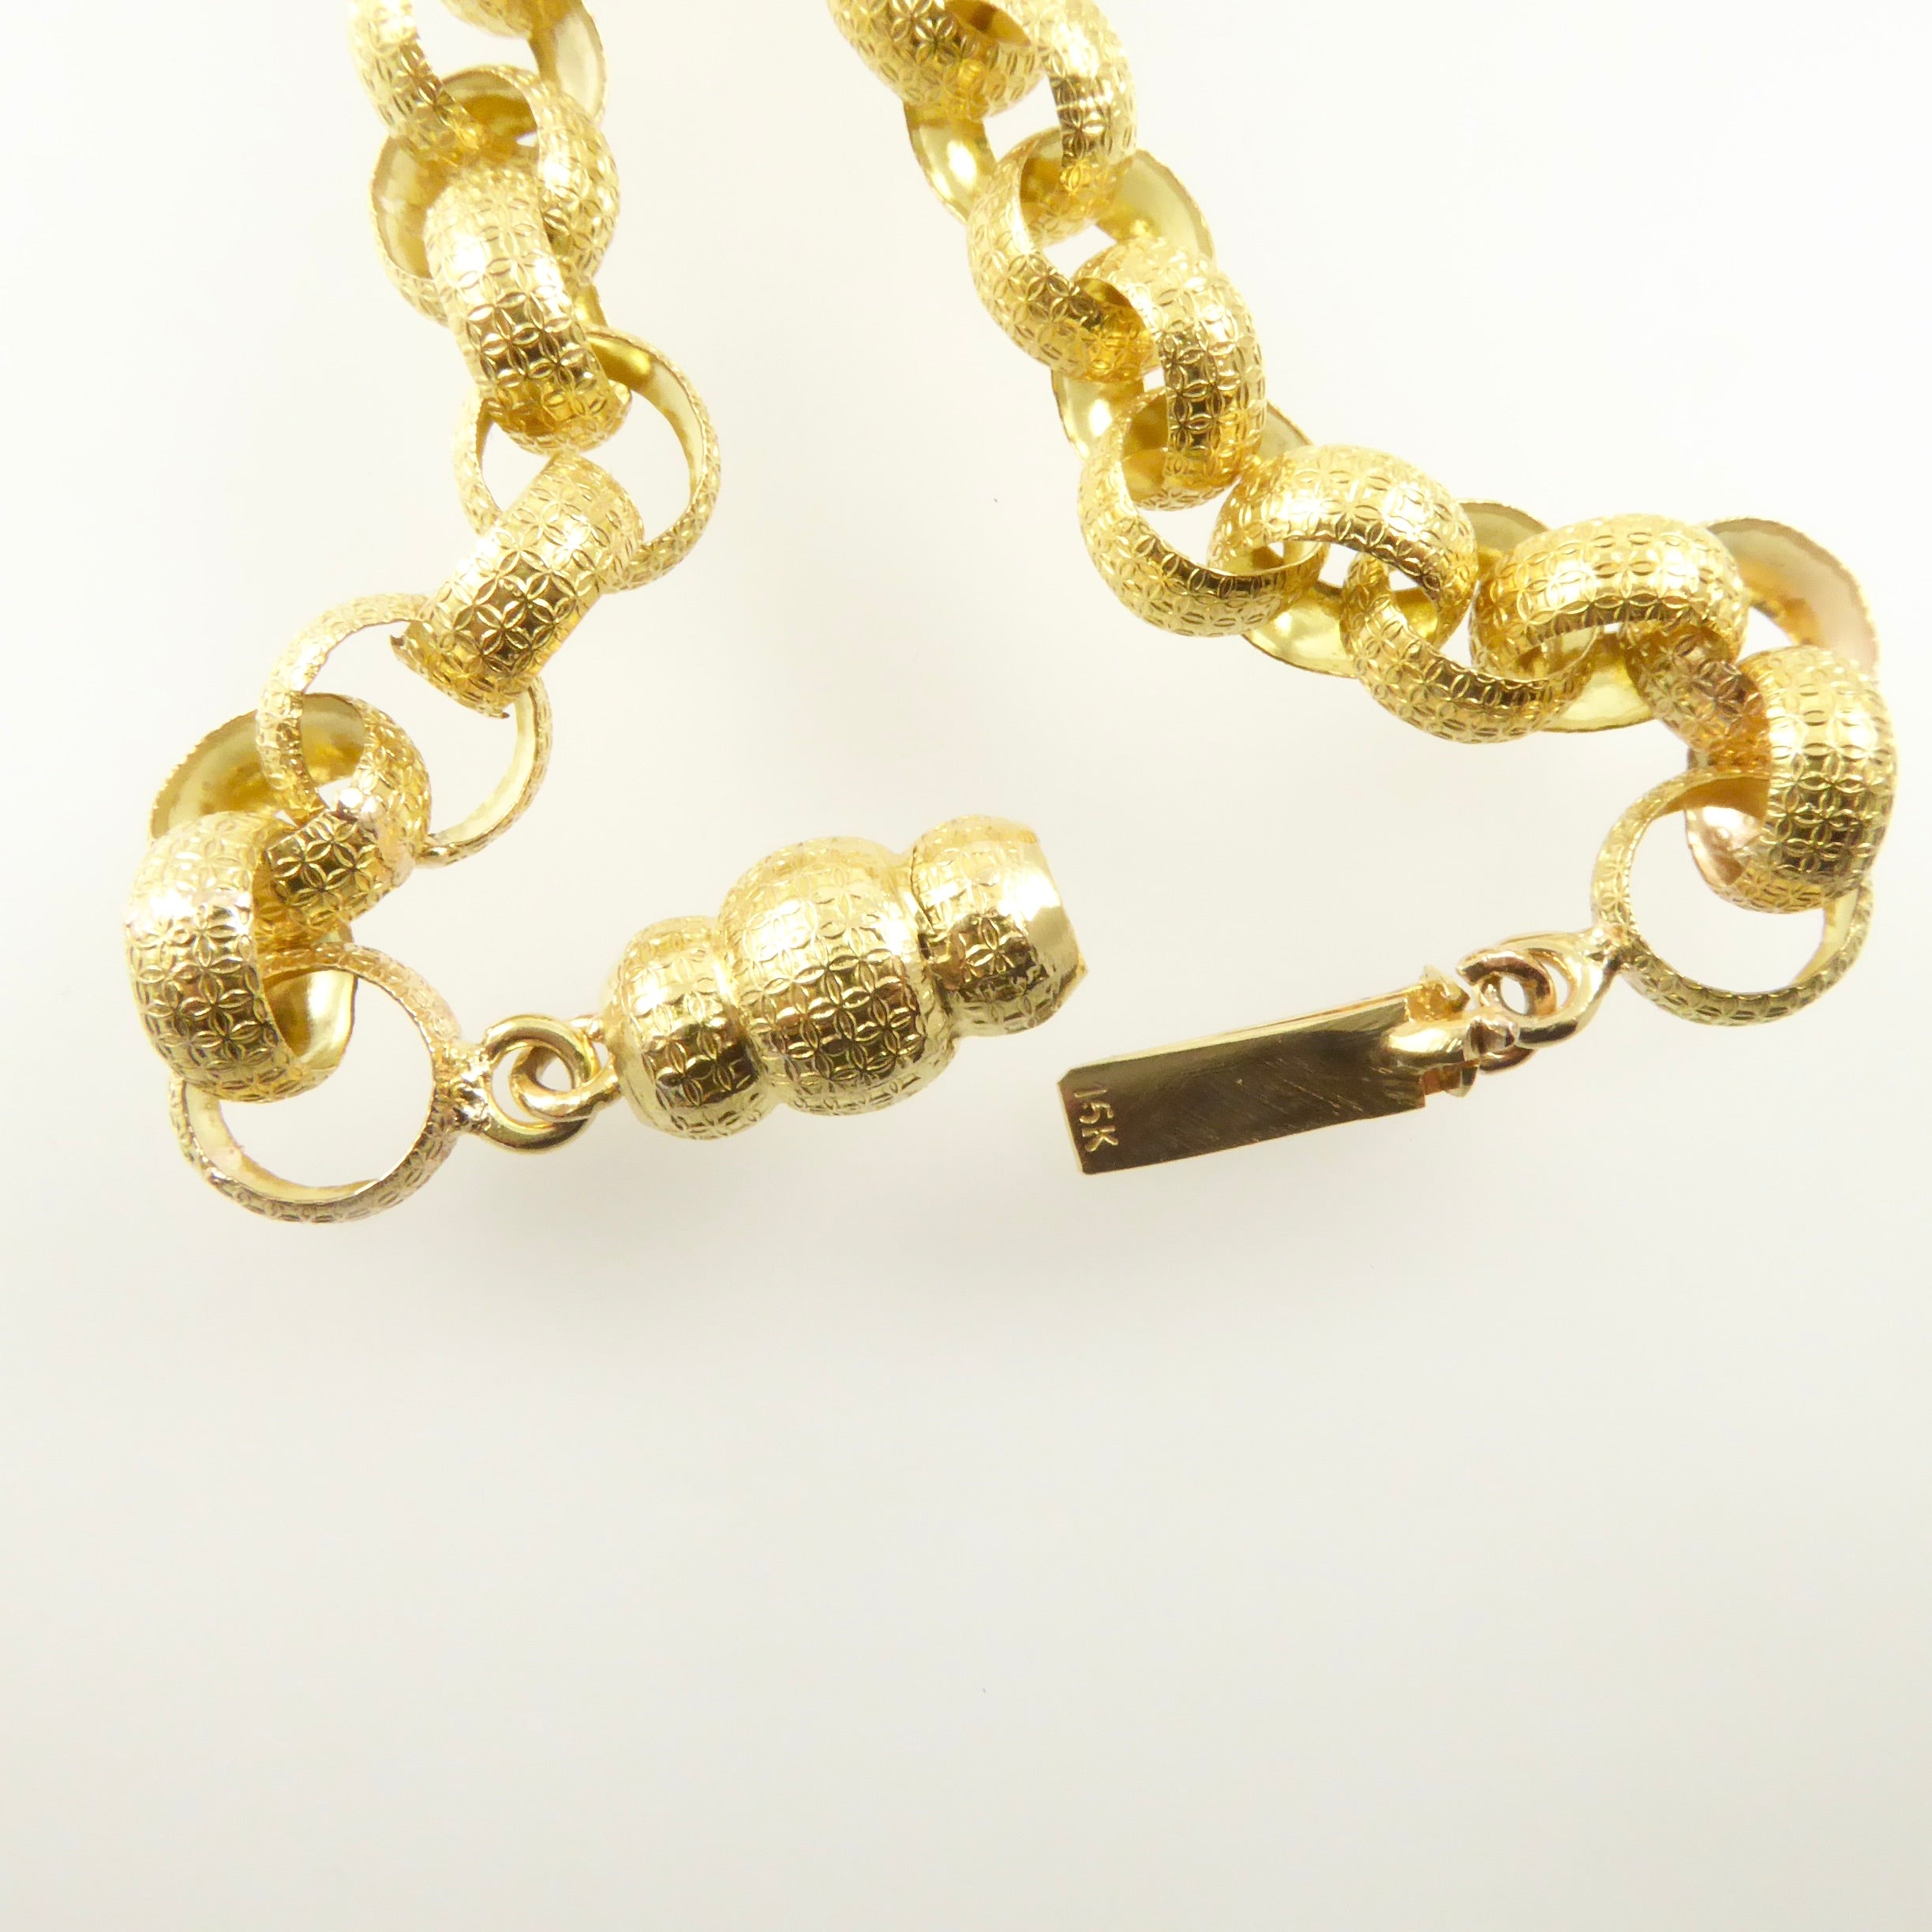 Georgian gold chain